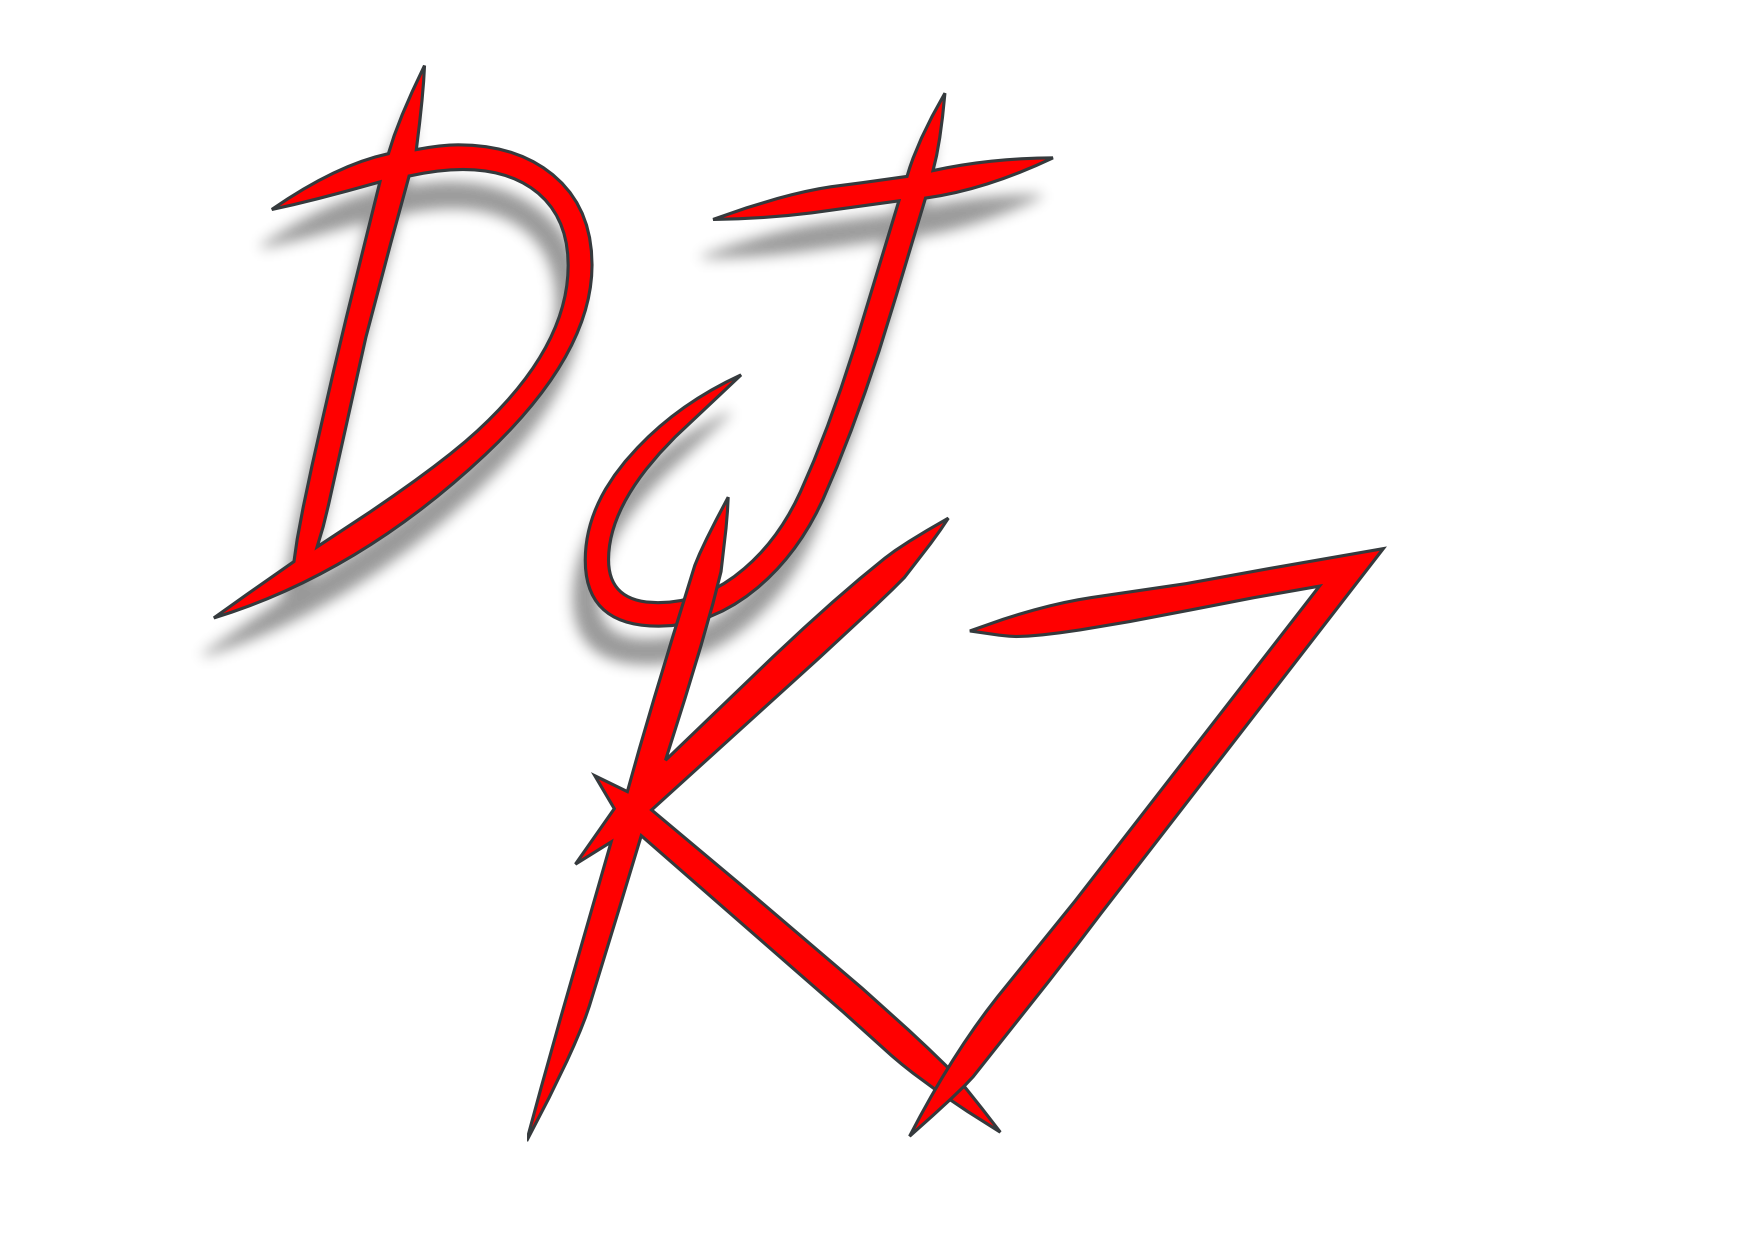 DJK7